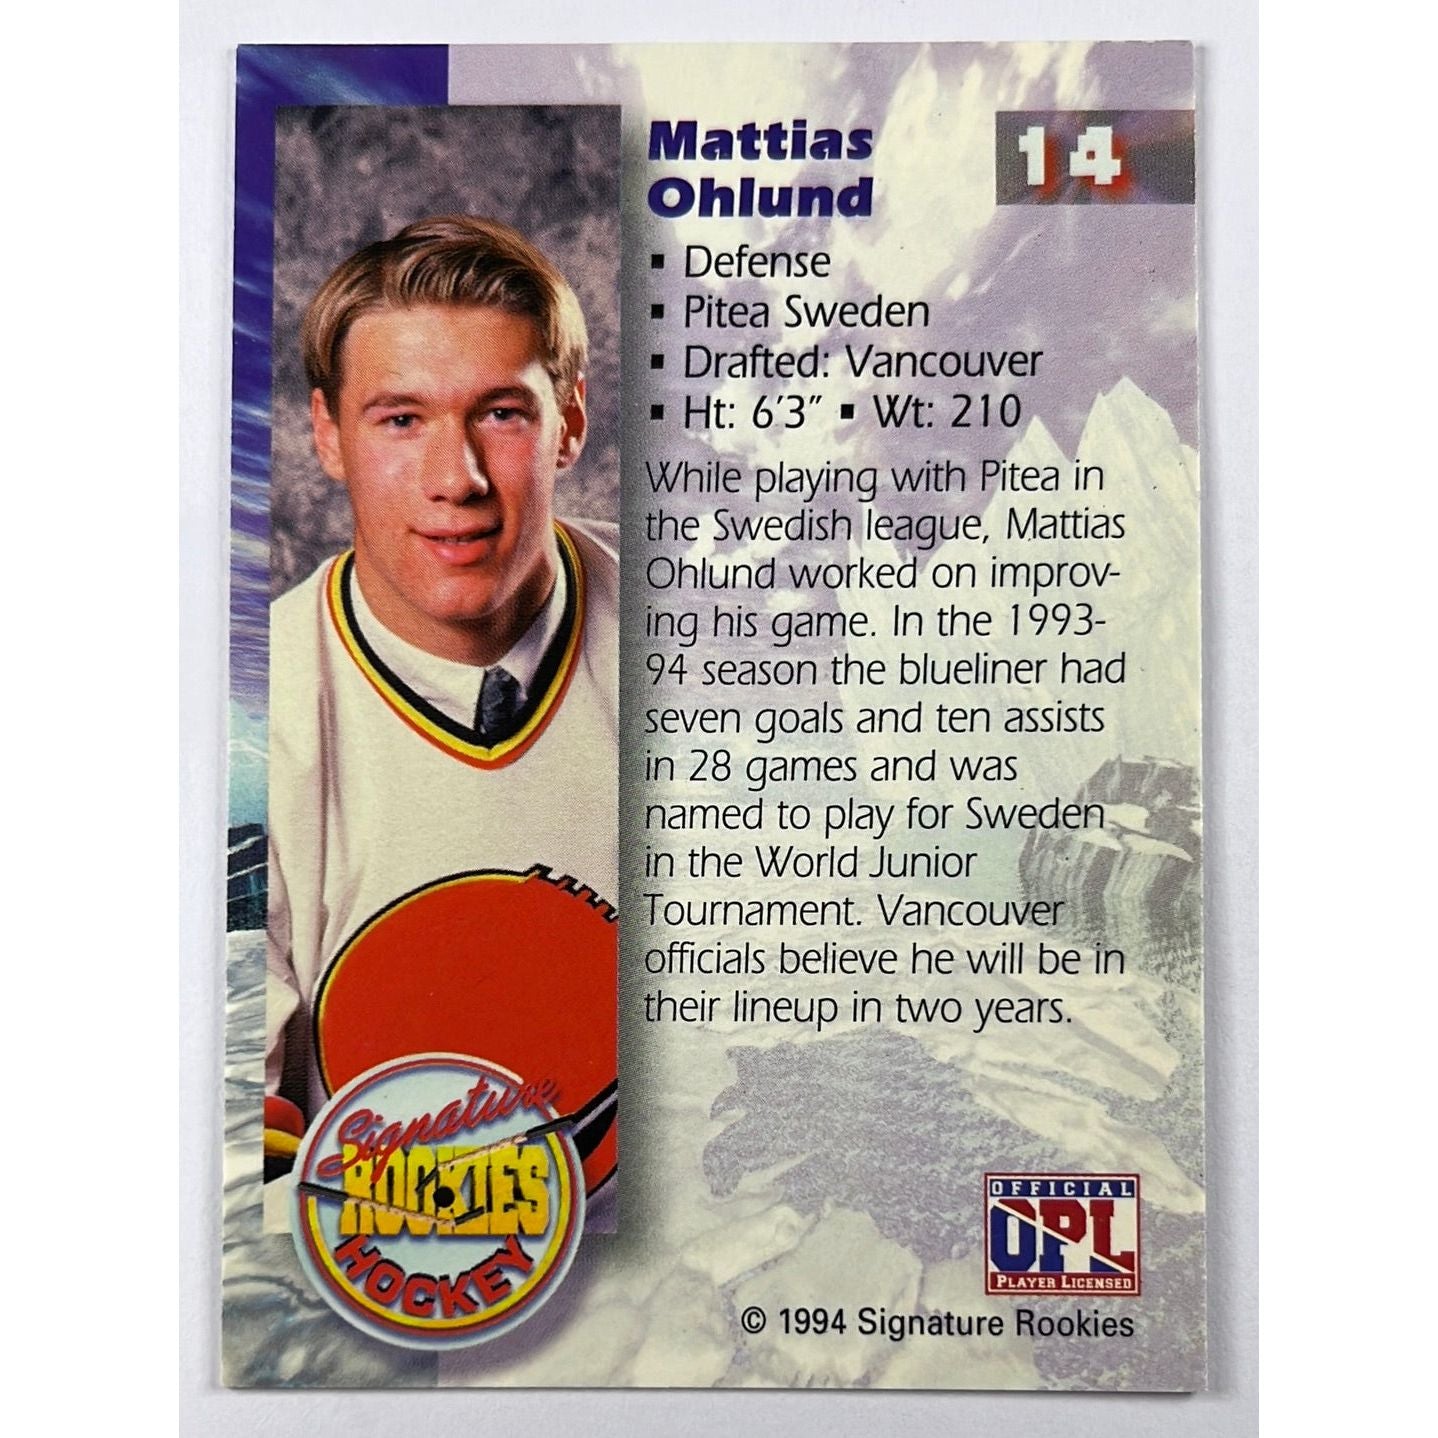 1994 Signature Rookies Mattias Ohlund RC /45,000